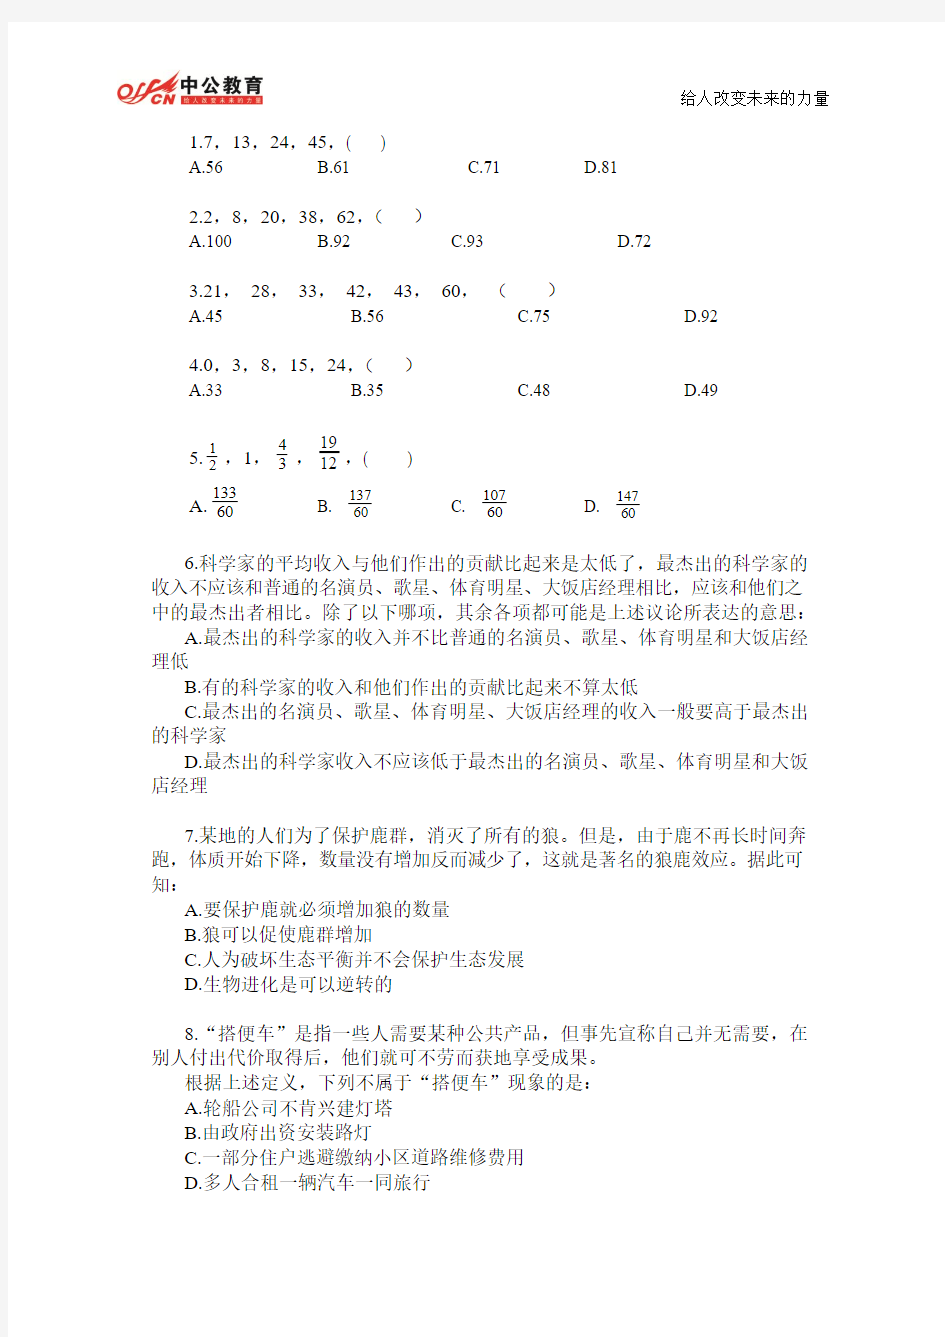 2014年甘肃省公务员考试行测申论考前练习题及答案 (49)